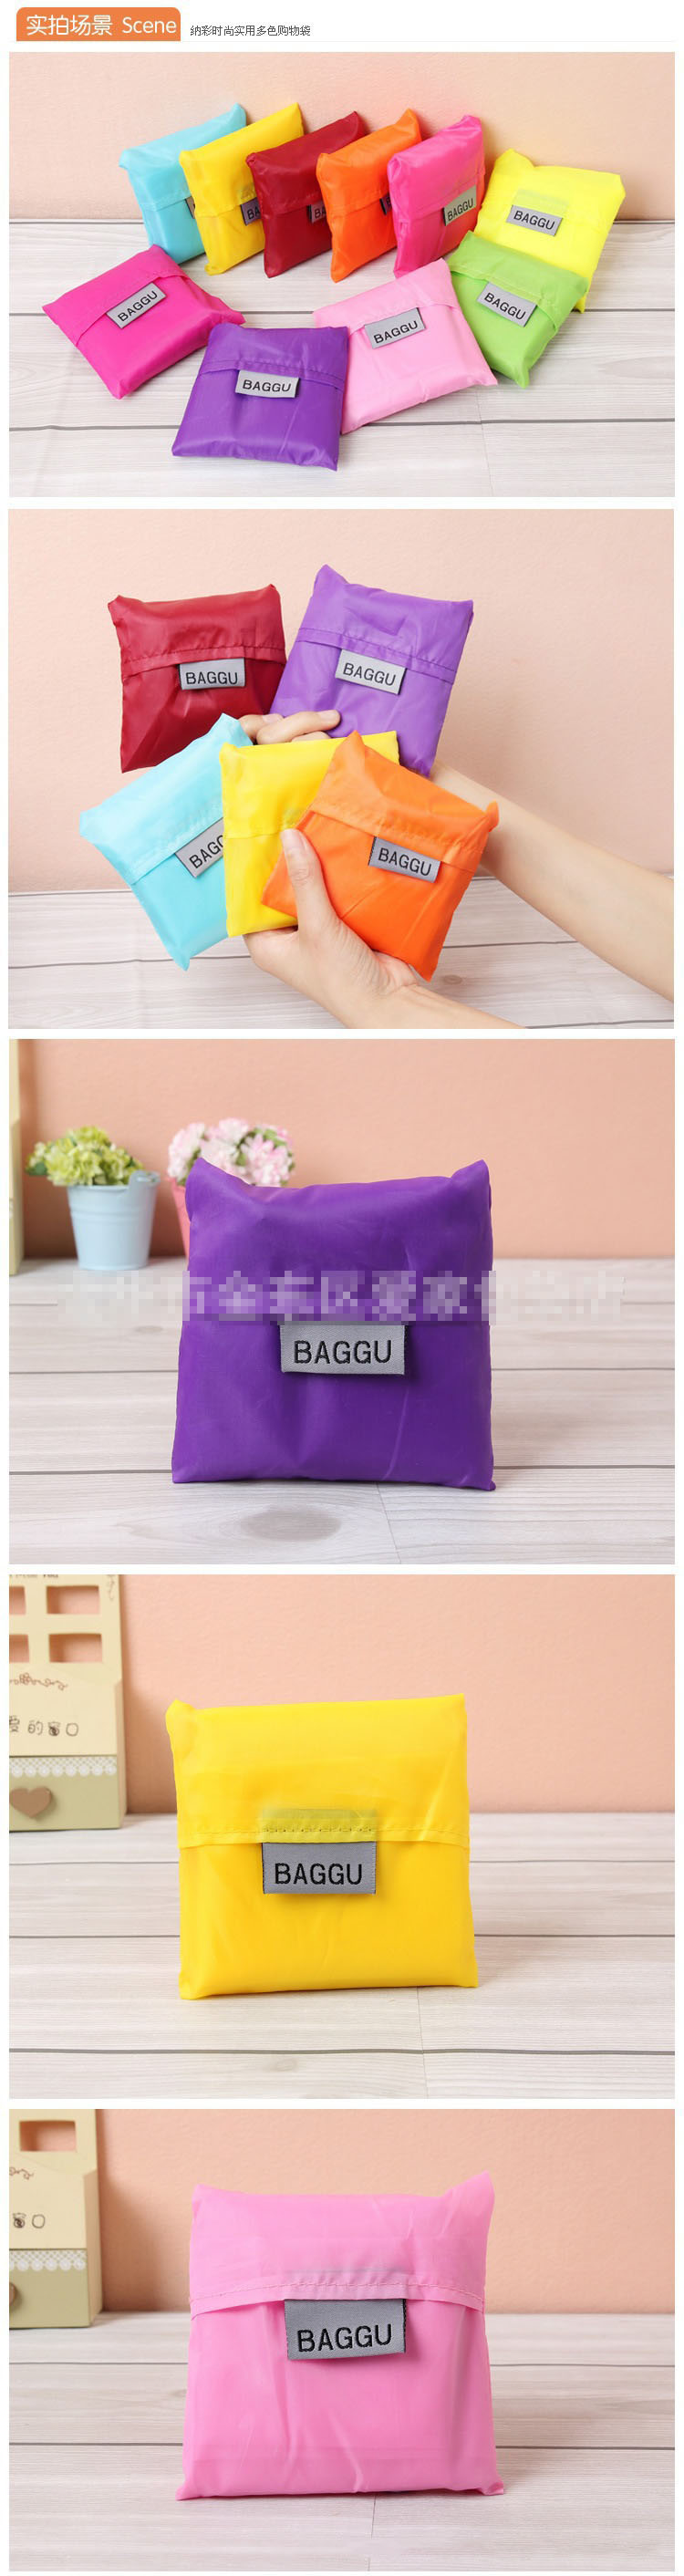 TS折叠购物袋手提袋创意礼品购物袋涤纶 折叠纯色折叠购物袋方包详情8